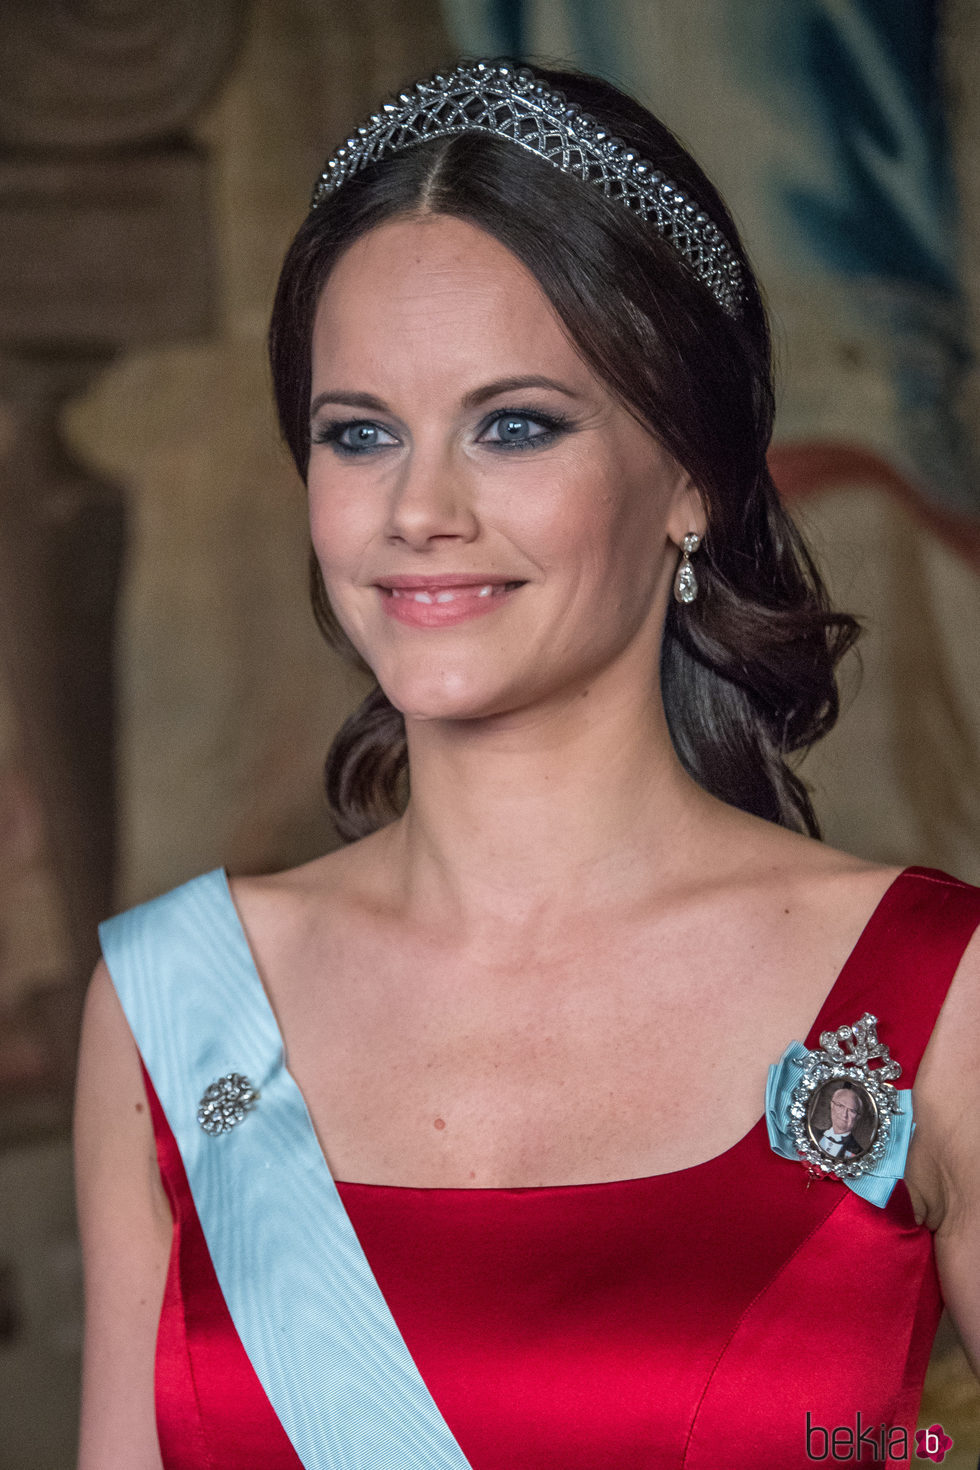 Sofia Hellqvist en un acto oficial en el Palacio Real de Estocolmo